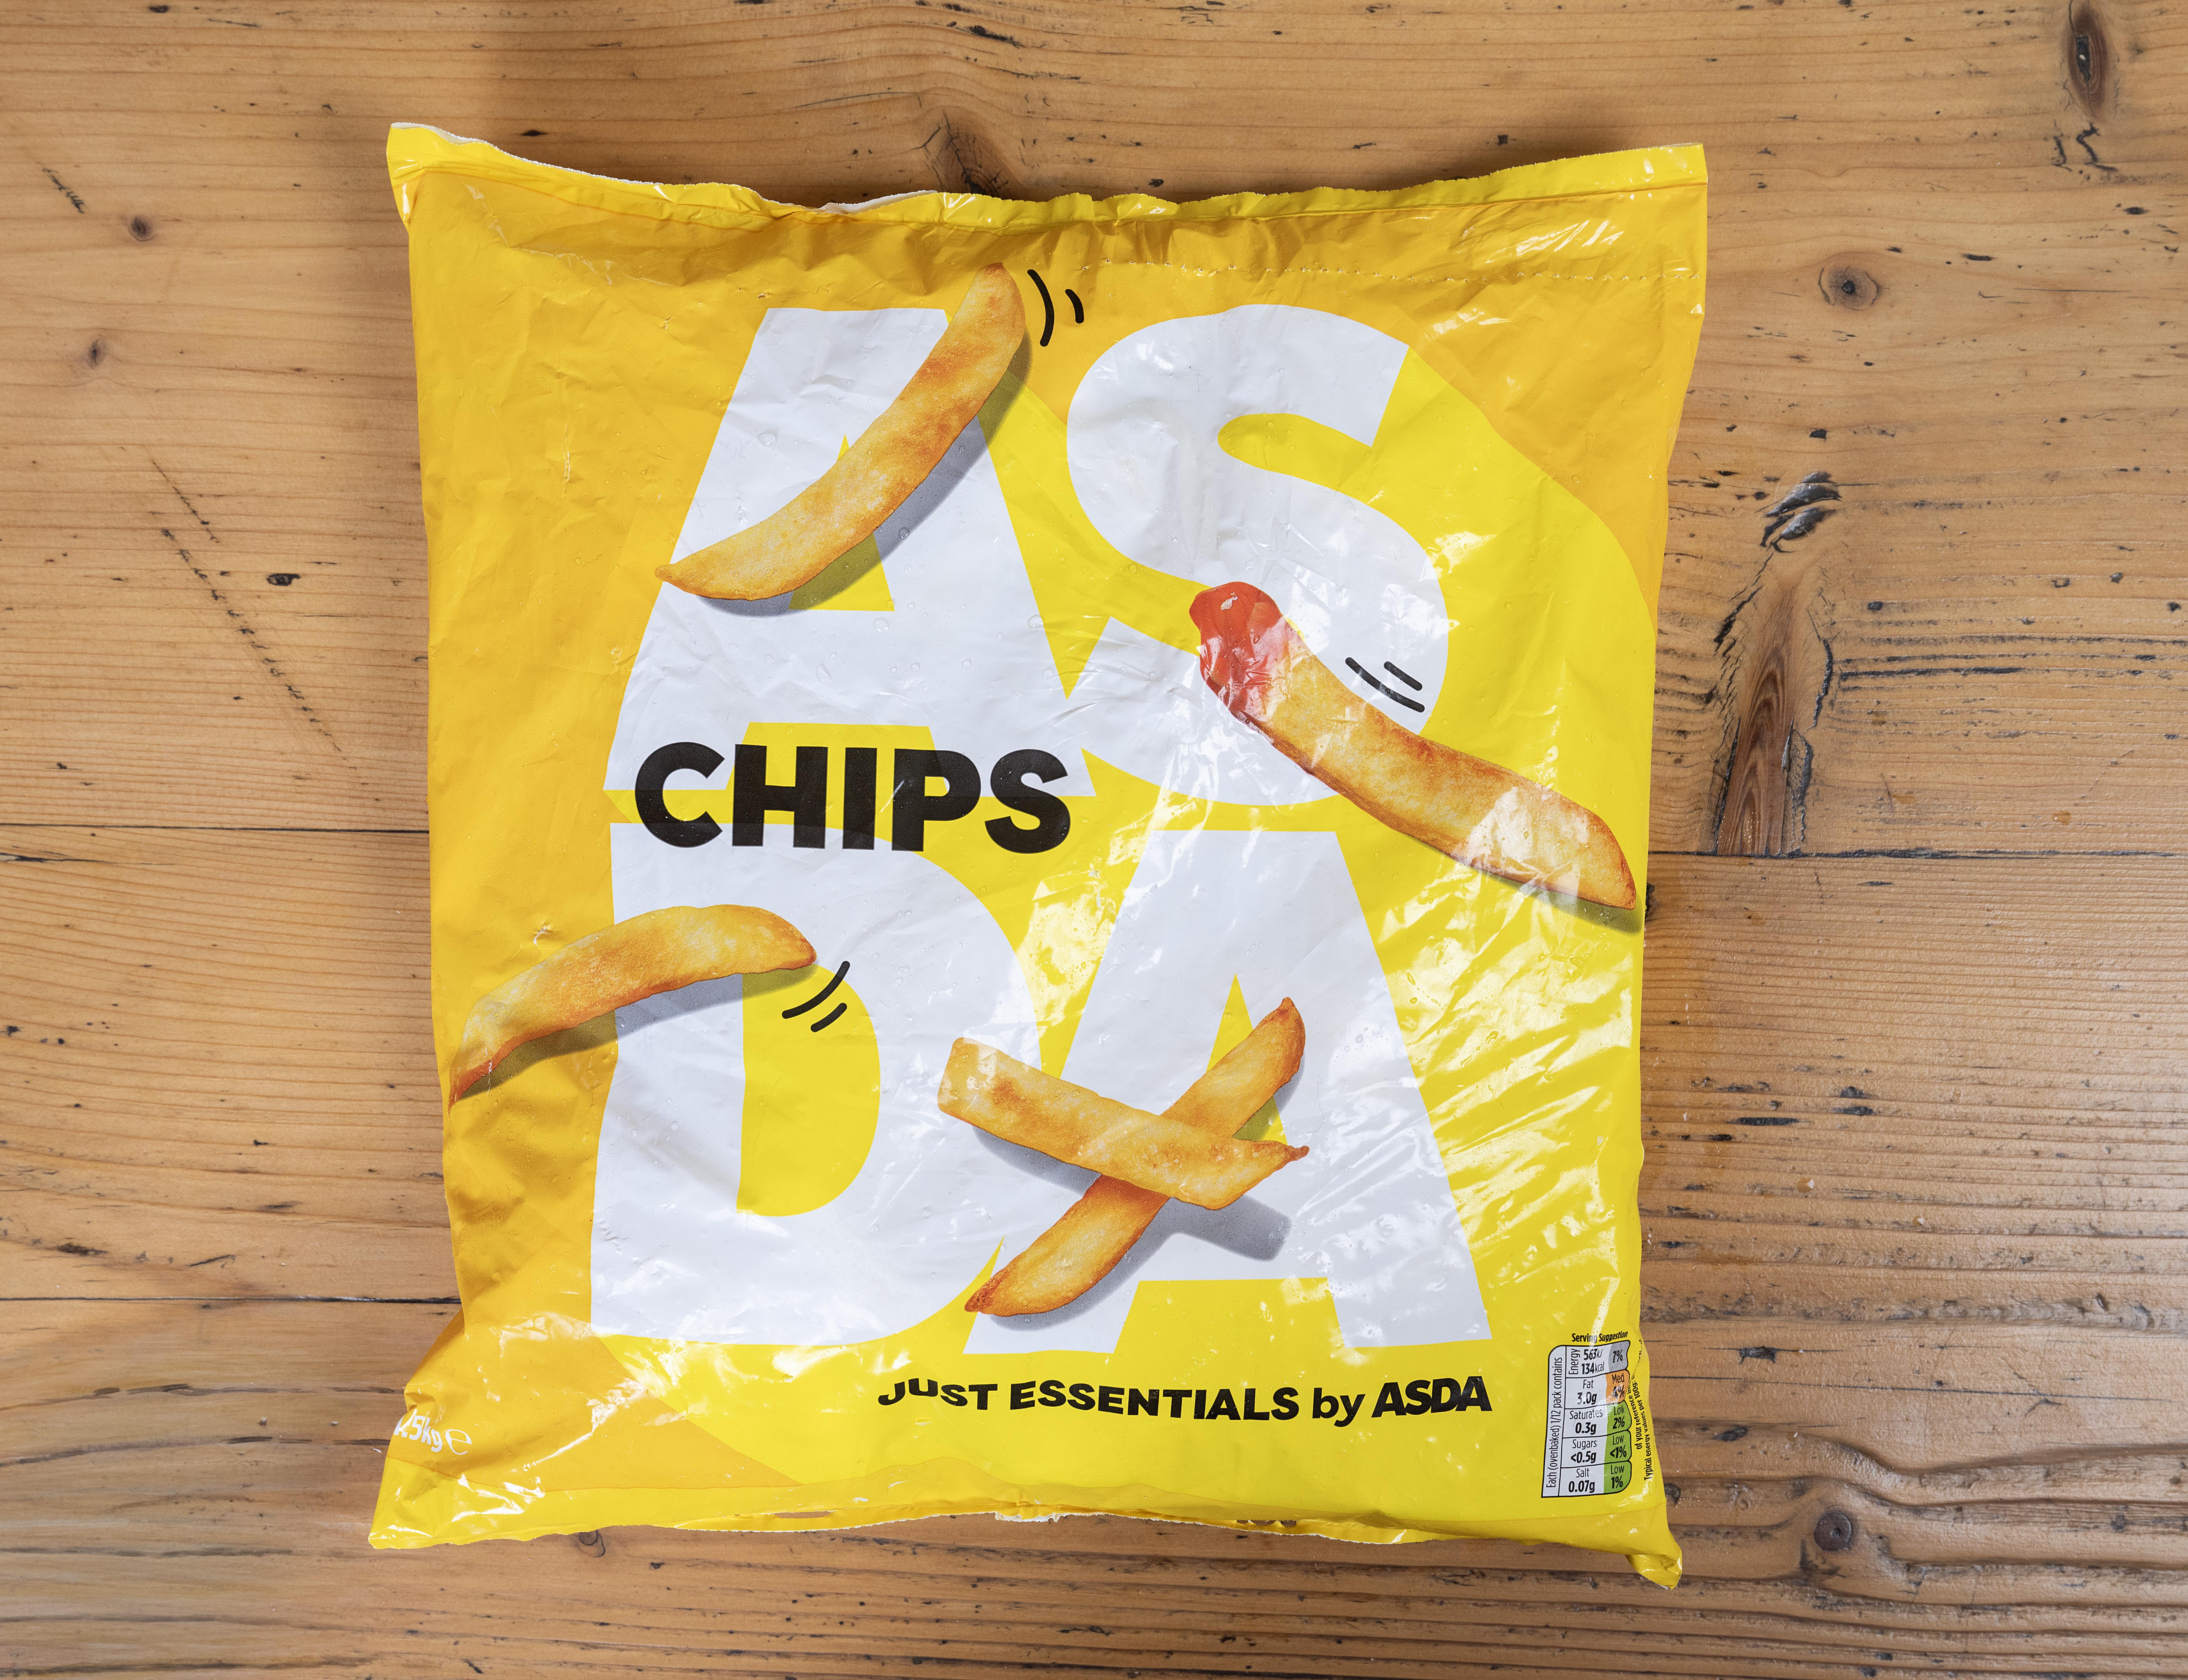 Asda Straight Cut Chips schmeckten nicht ausreichend gekocht